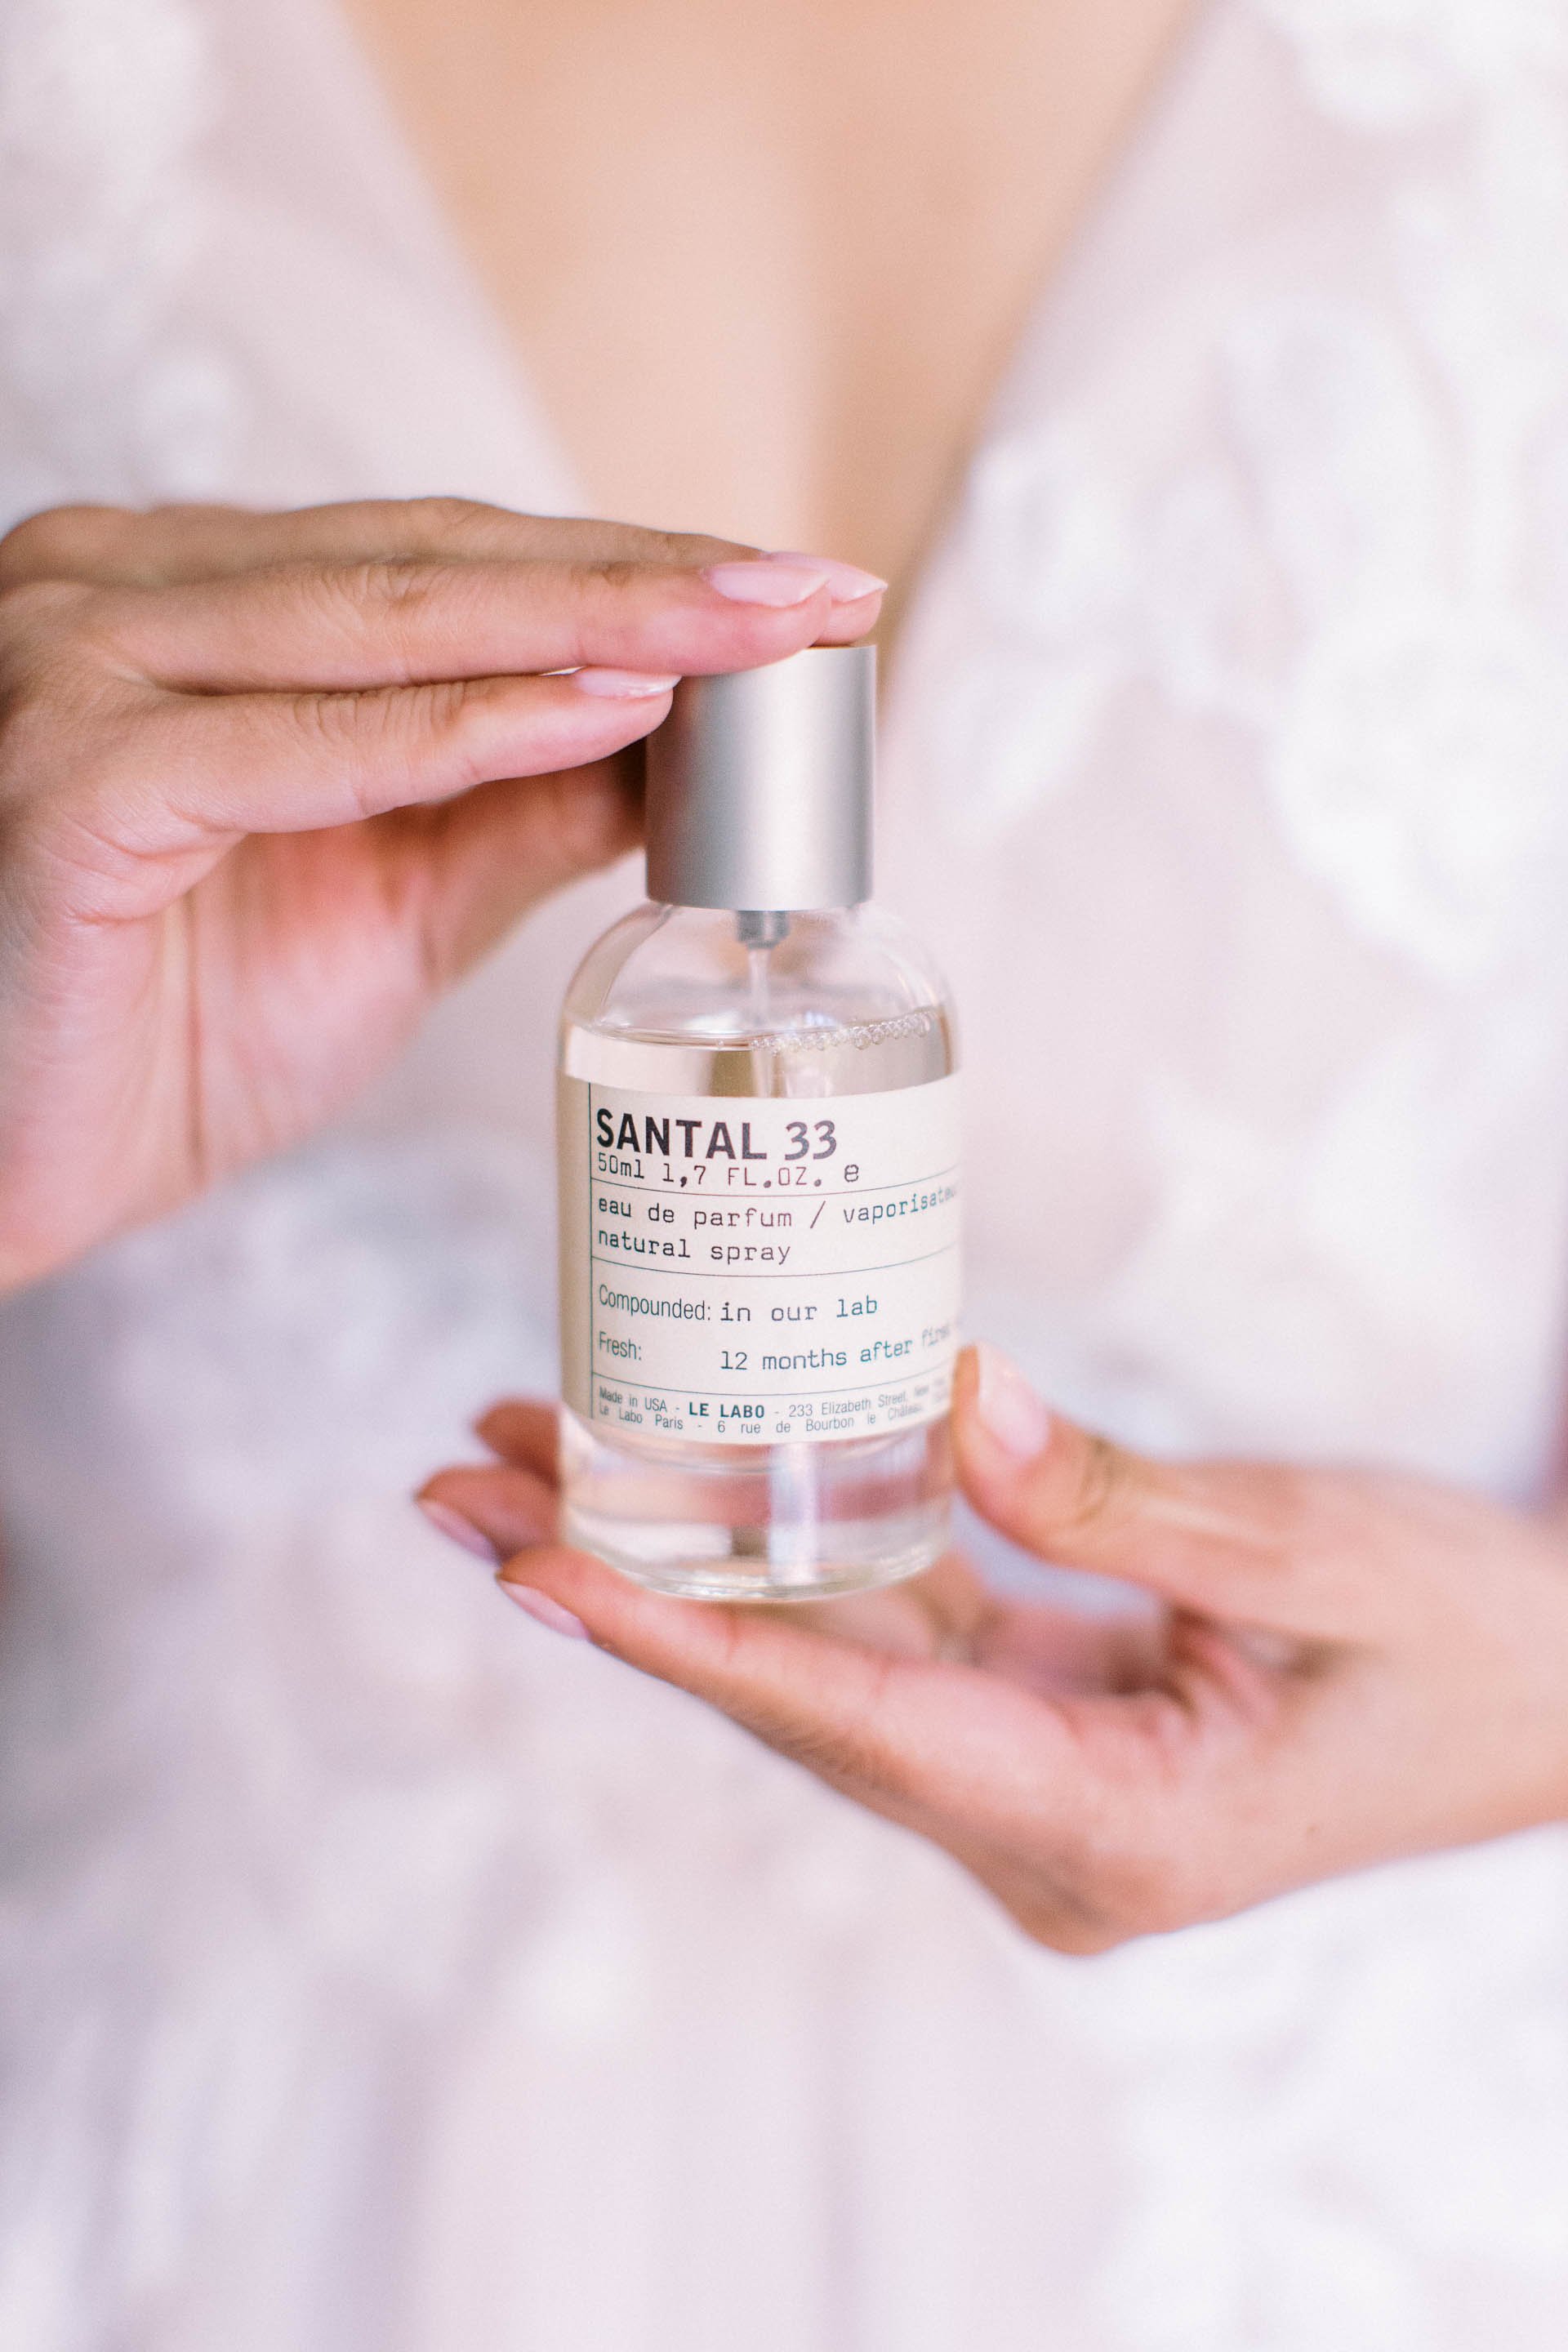 santal 33 perfume at wedding